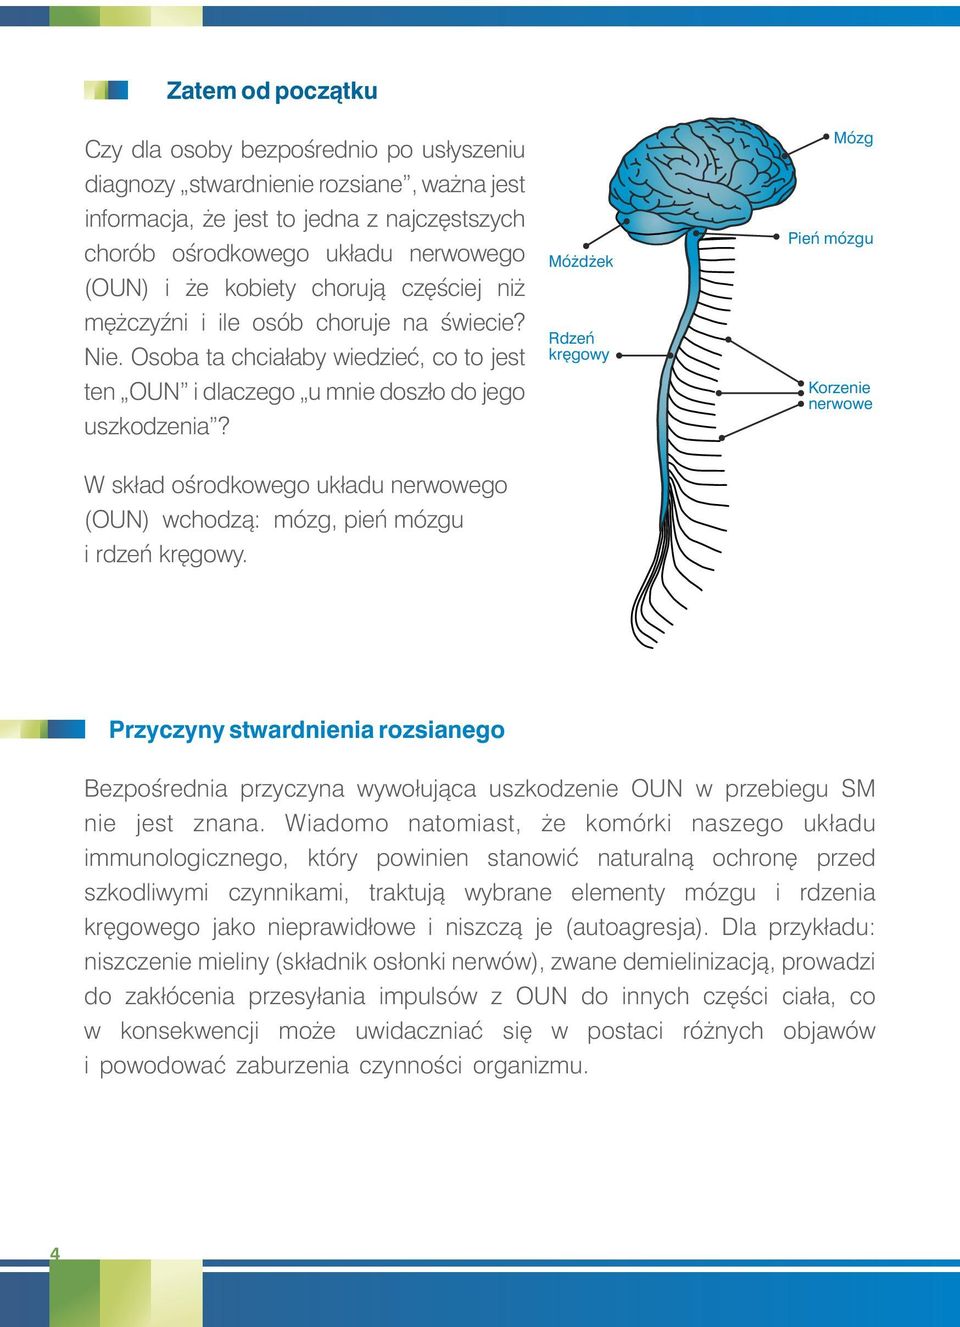 W skład ośrodkowego układu nerwowego (OUN) wchodzą: mózg, pień mózgu i rdzeń kręgowy.